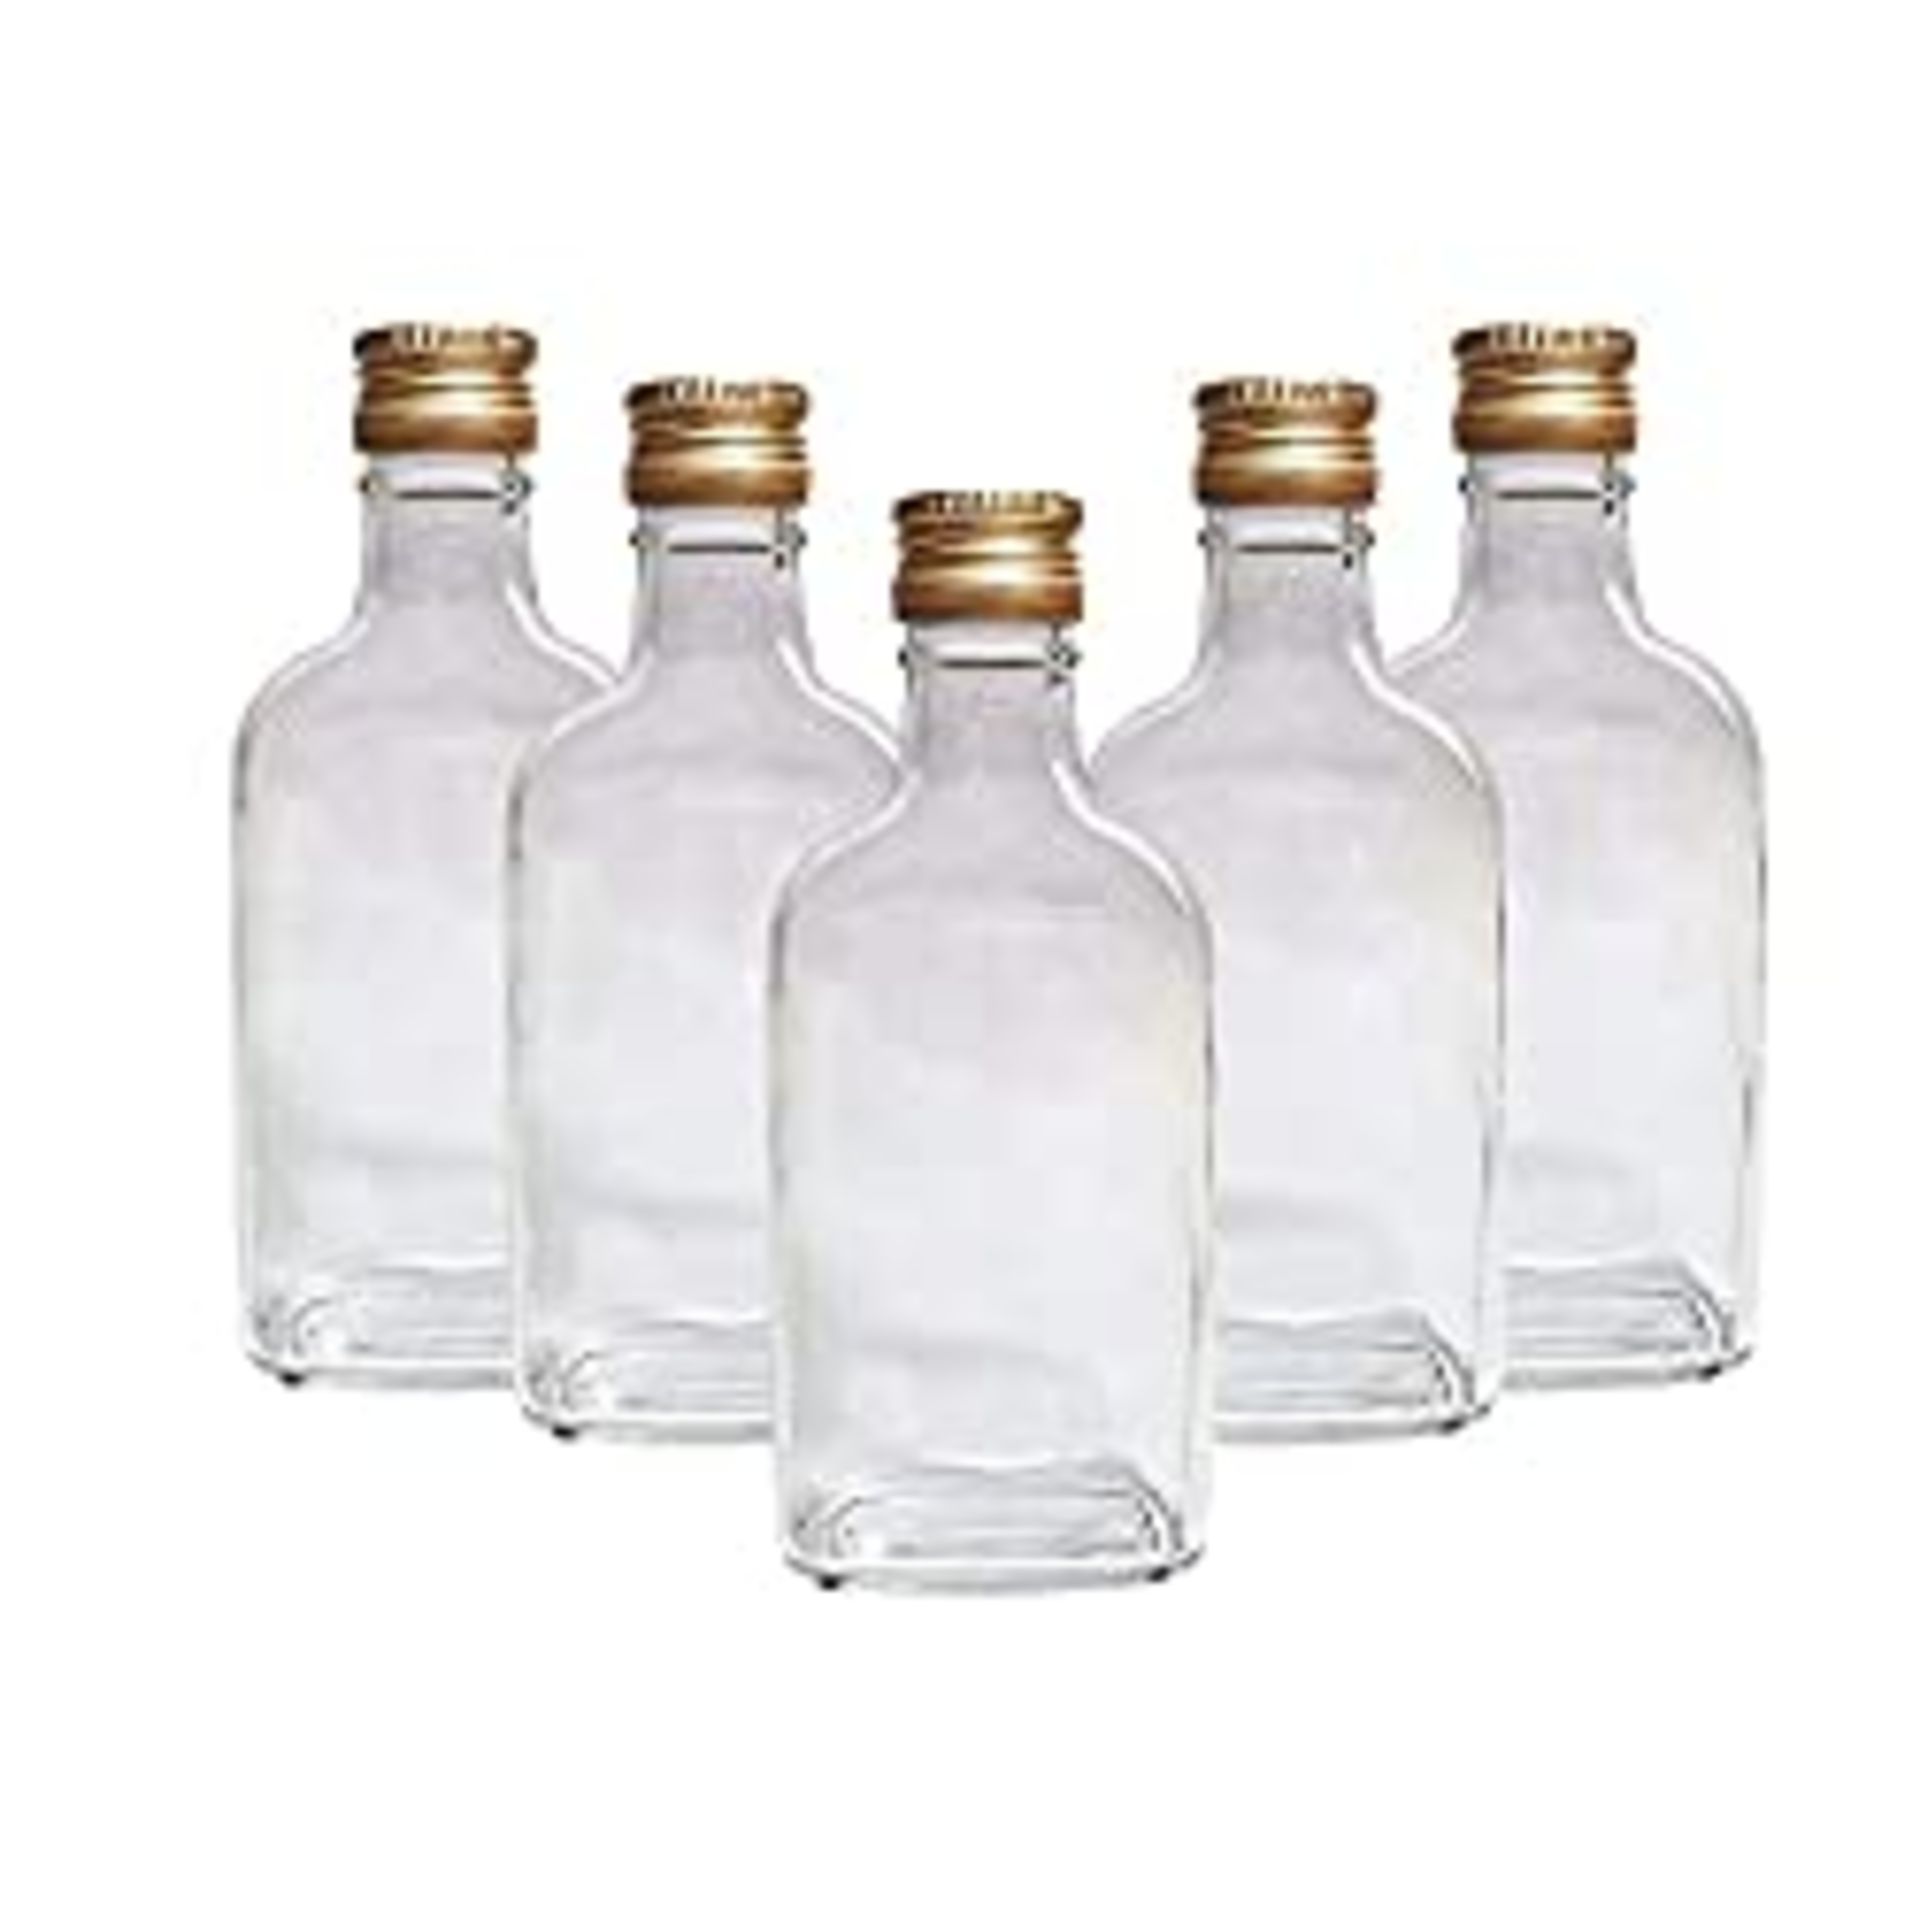 RRP £15.40 10 x Flask Glass Bottles 200 ml (0.2L) & Metal Screw Caps (Twist on Lids)